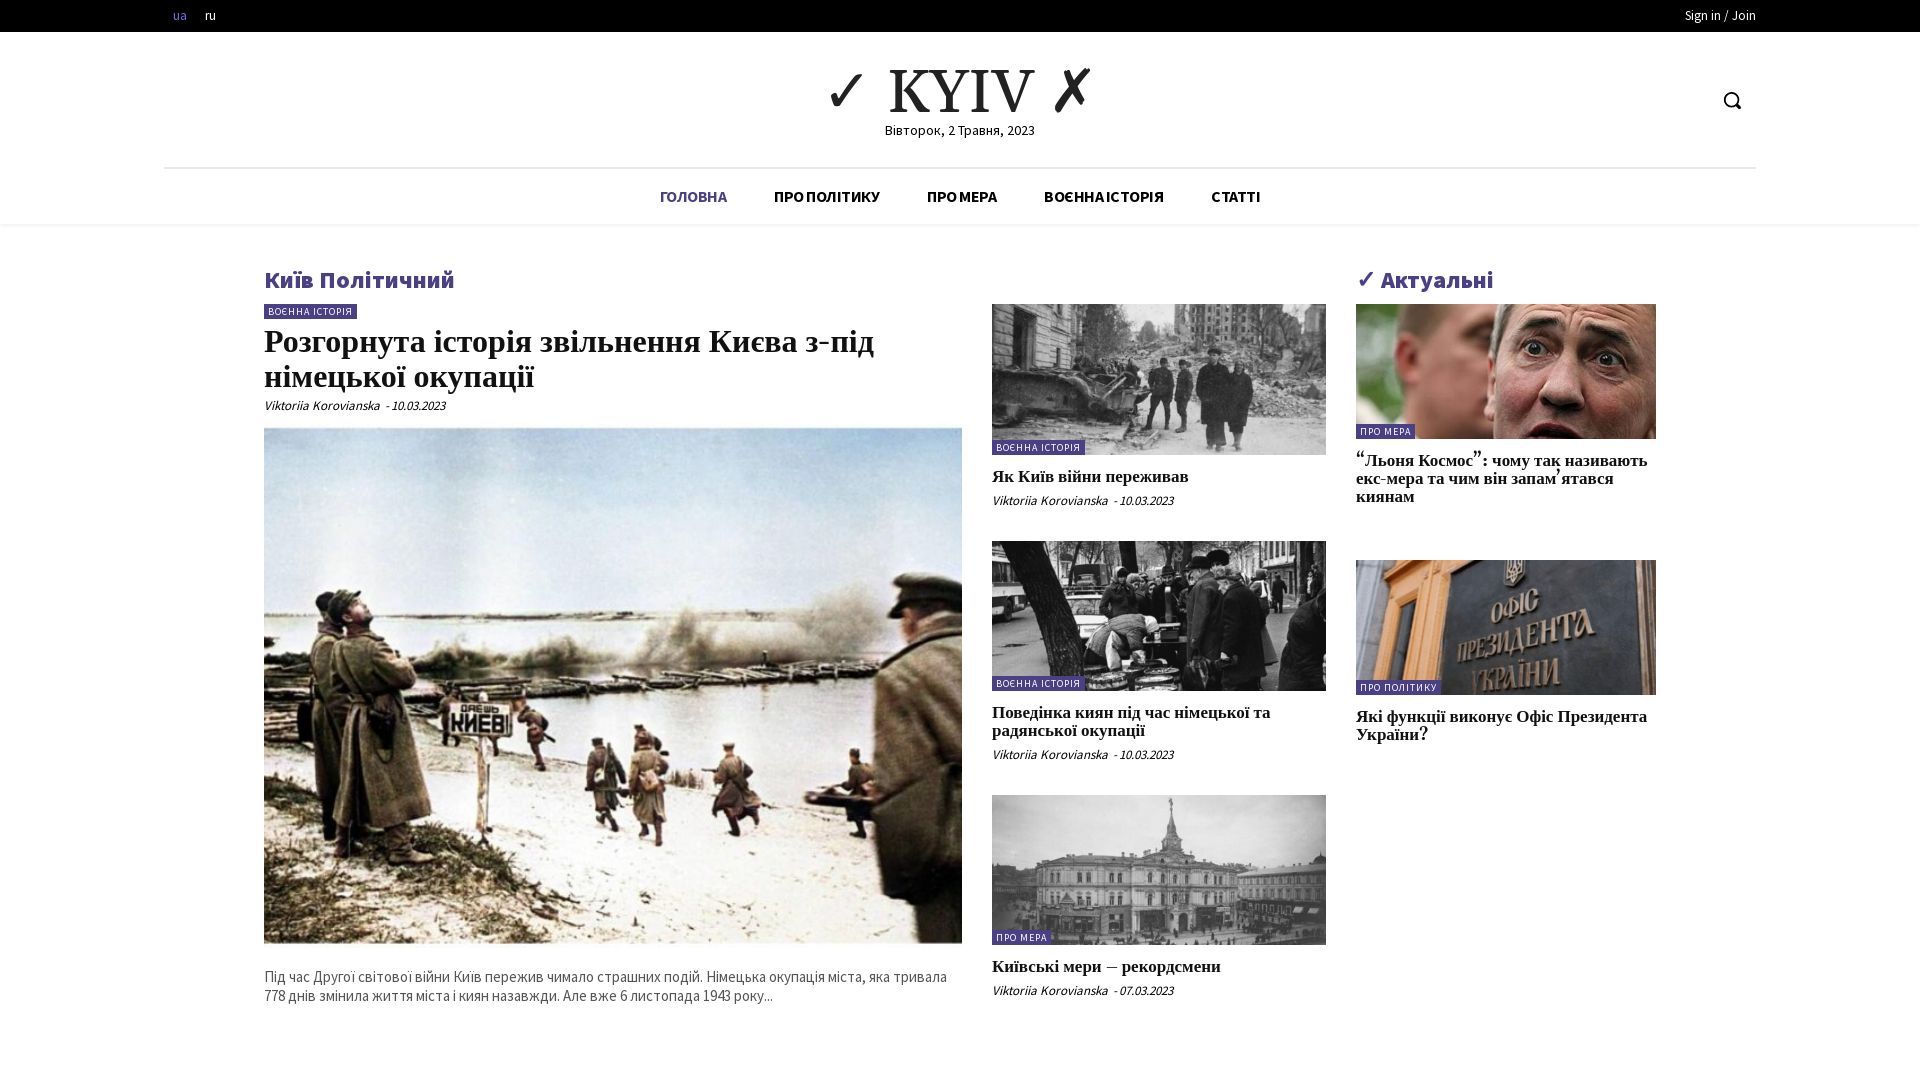 Estado web kyivyes.com.ua está   ONLINE